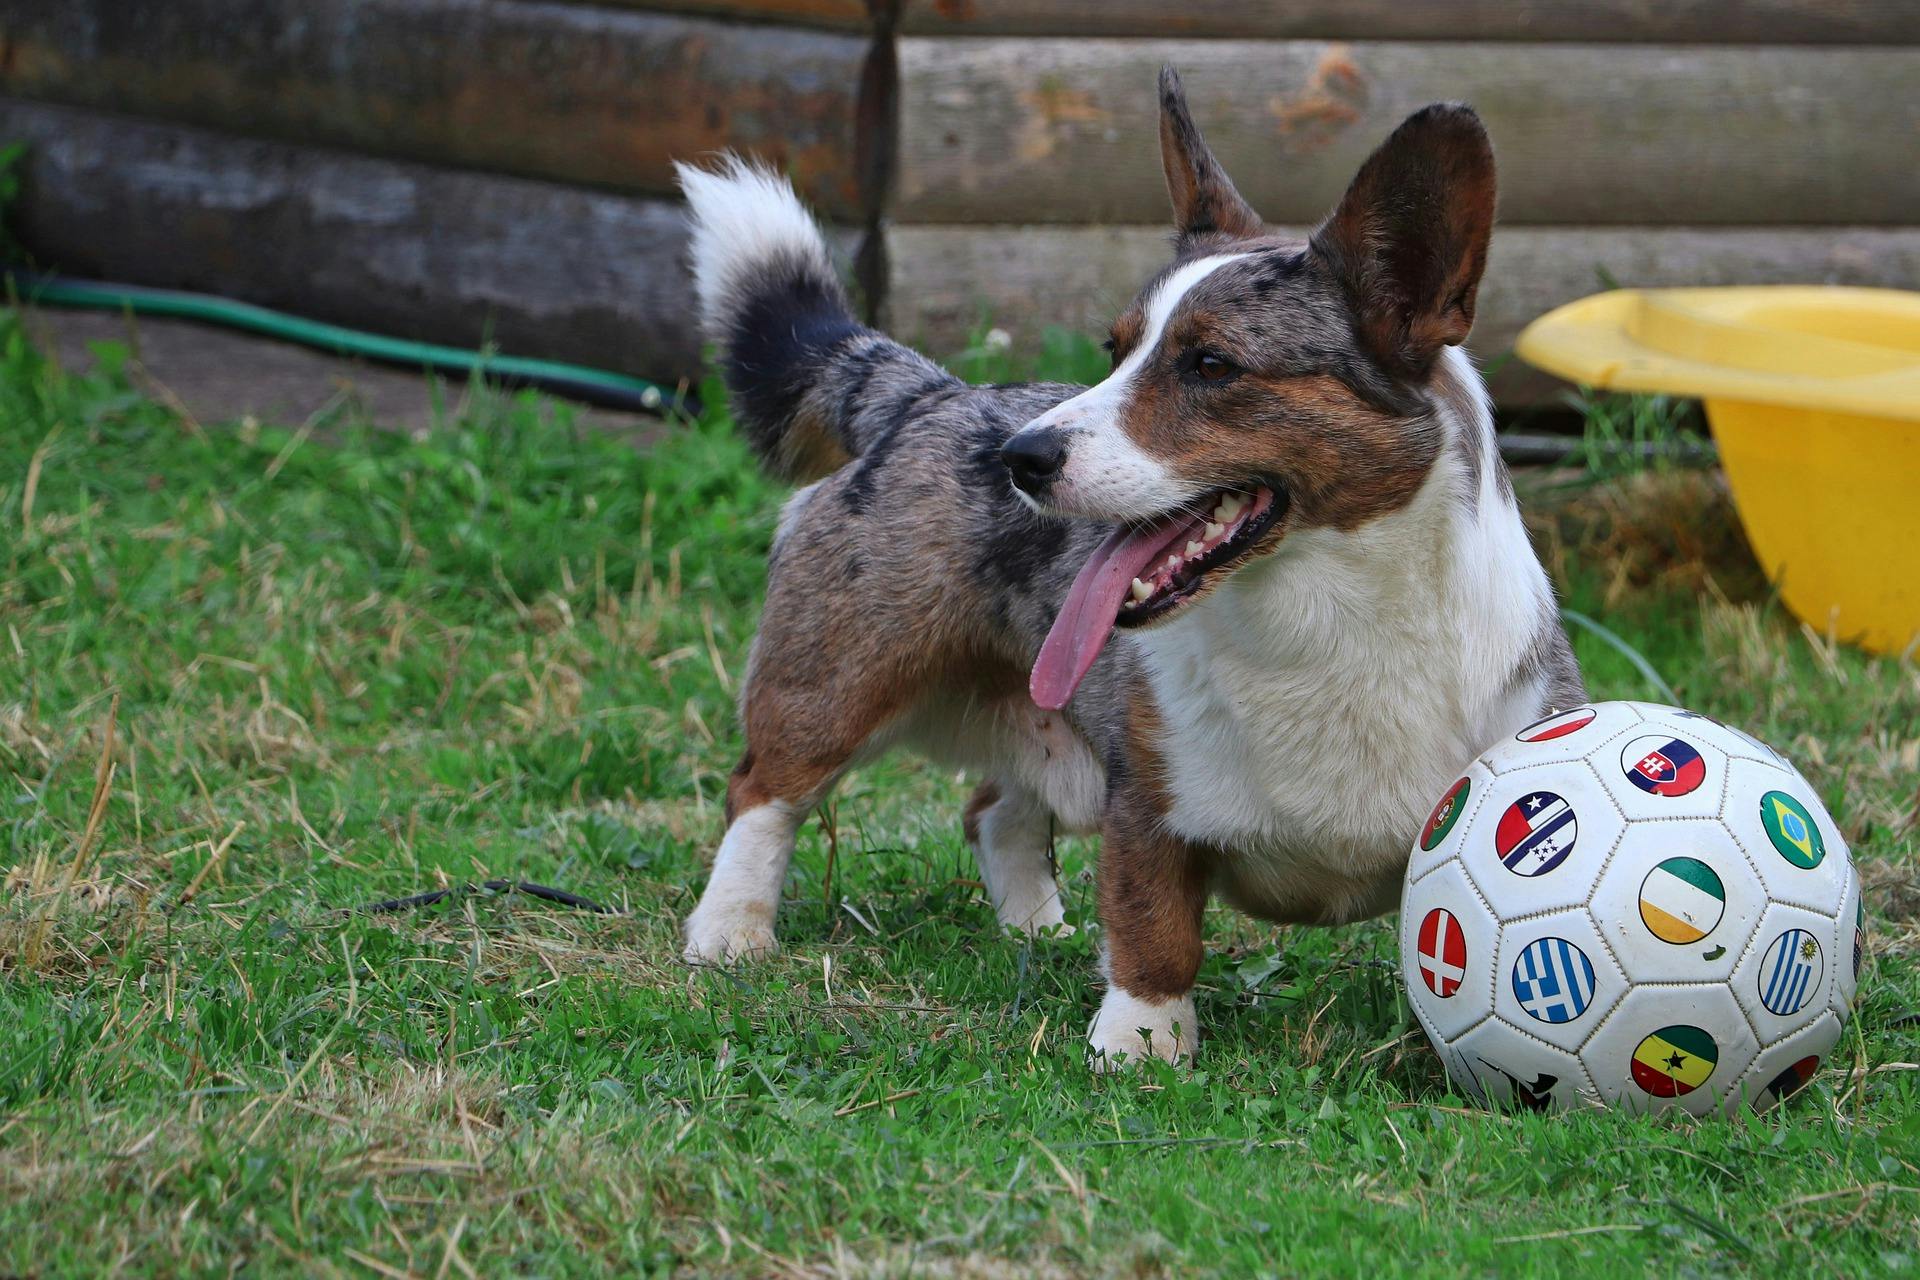 Corgi playing with a soccer ball